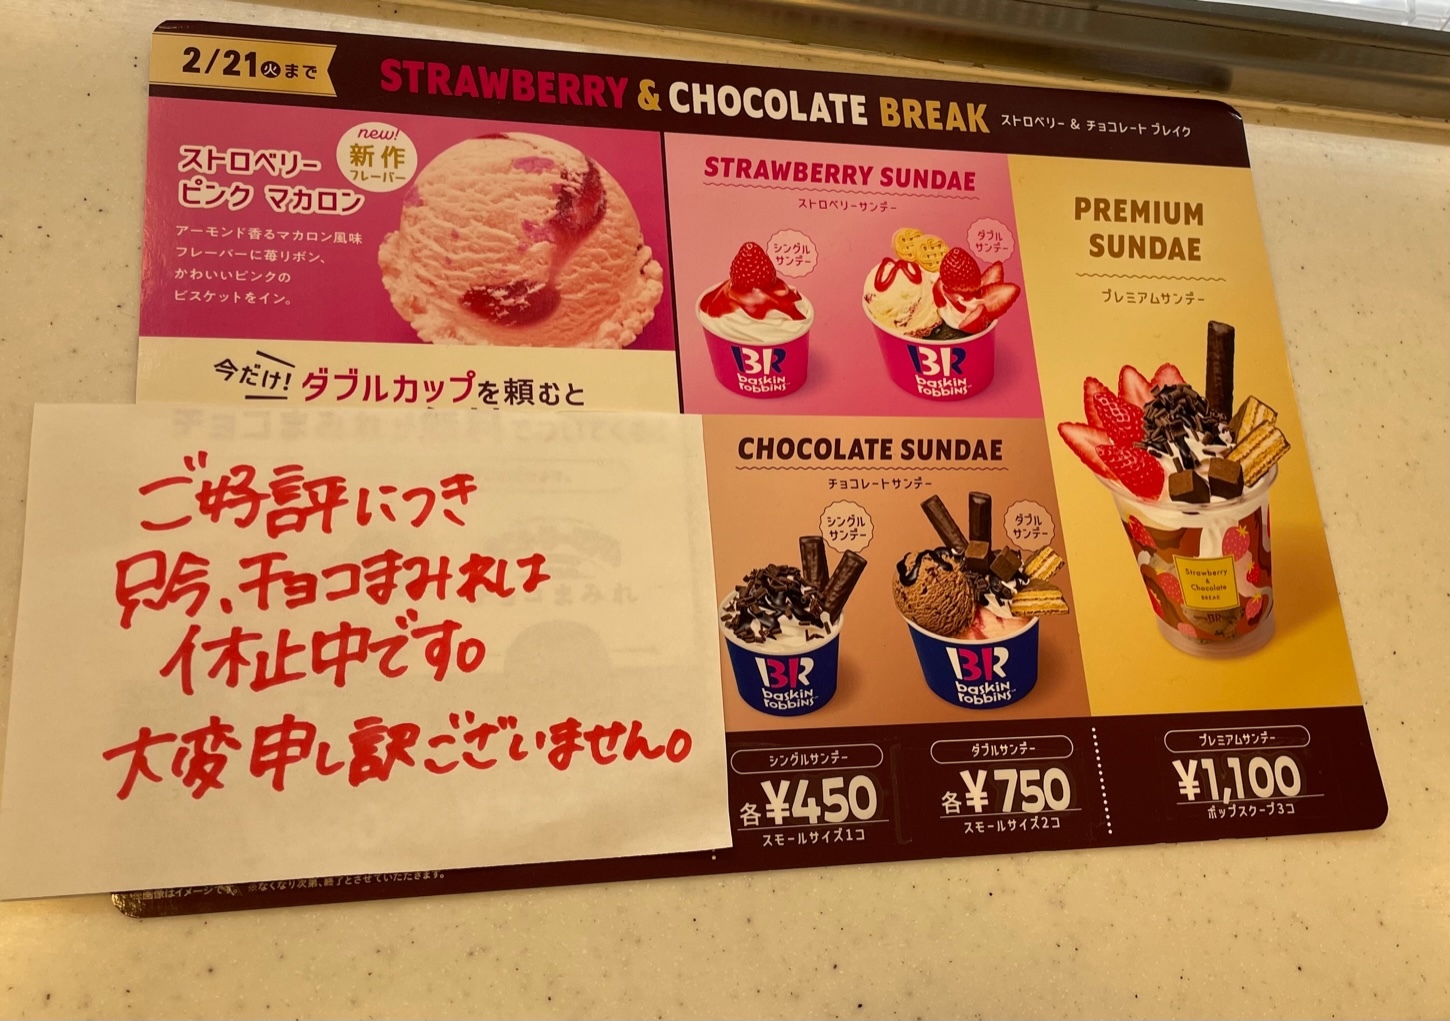 富士八幡町店では、「チョコまみれ」は休止中